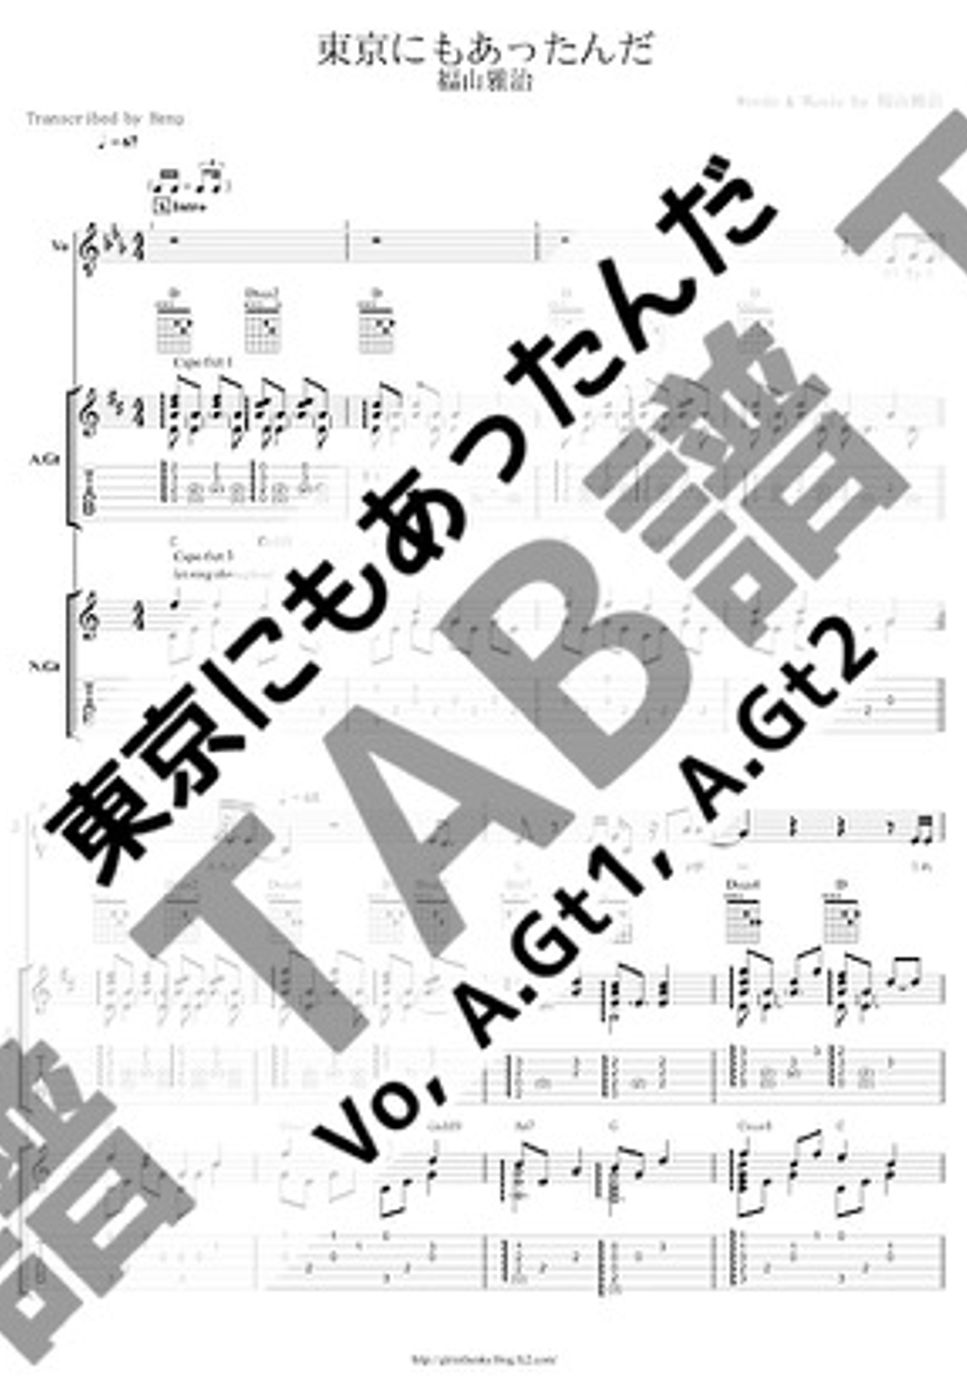 福山 雅治 - 東京にもあったんだ (小編成/Vo&A.Gts/歌詞/コード/TAB譜) by Score by Reng